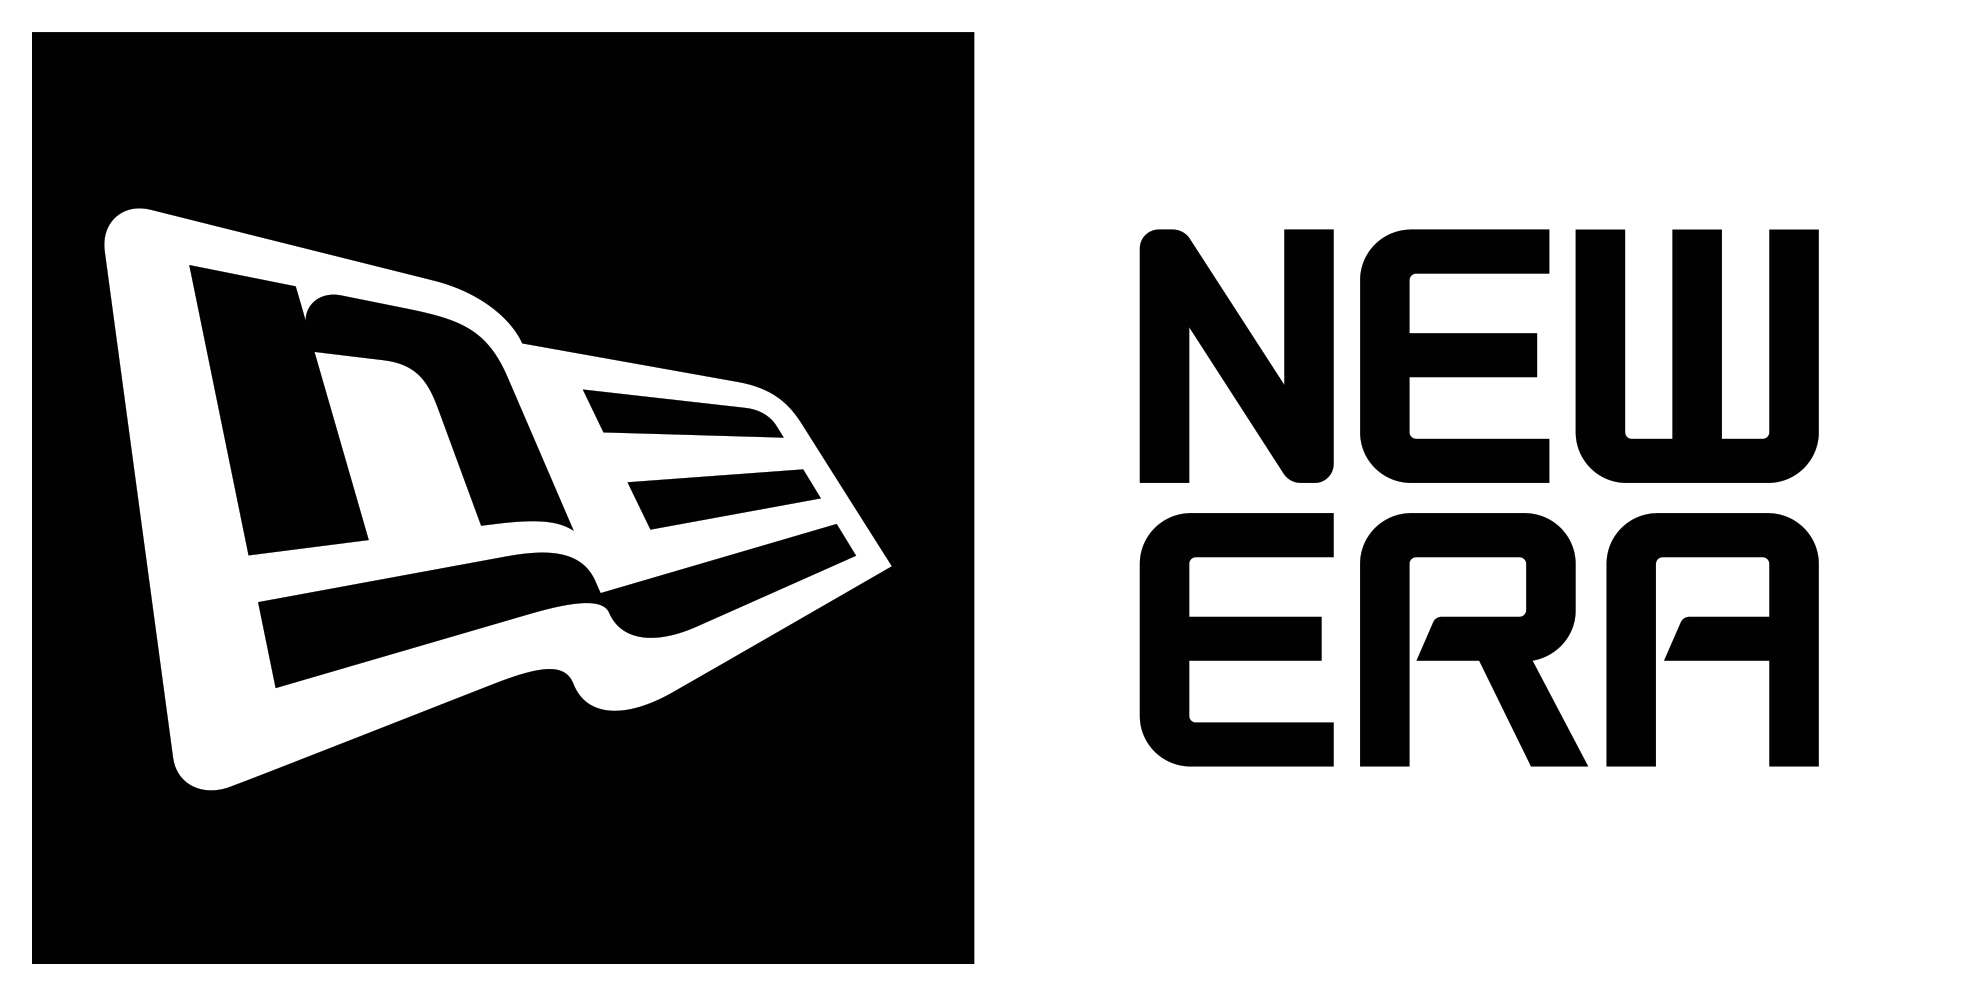 Résultat de recherche d'images pour "new era logo"